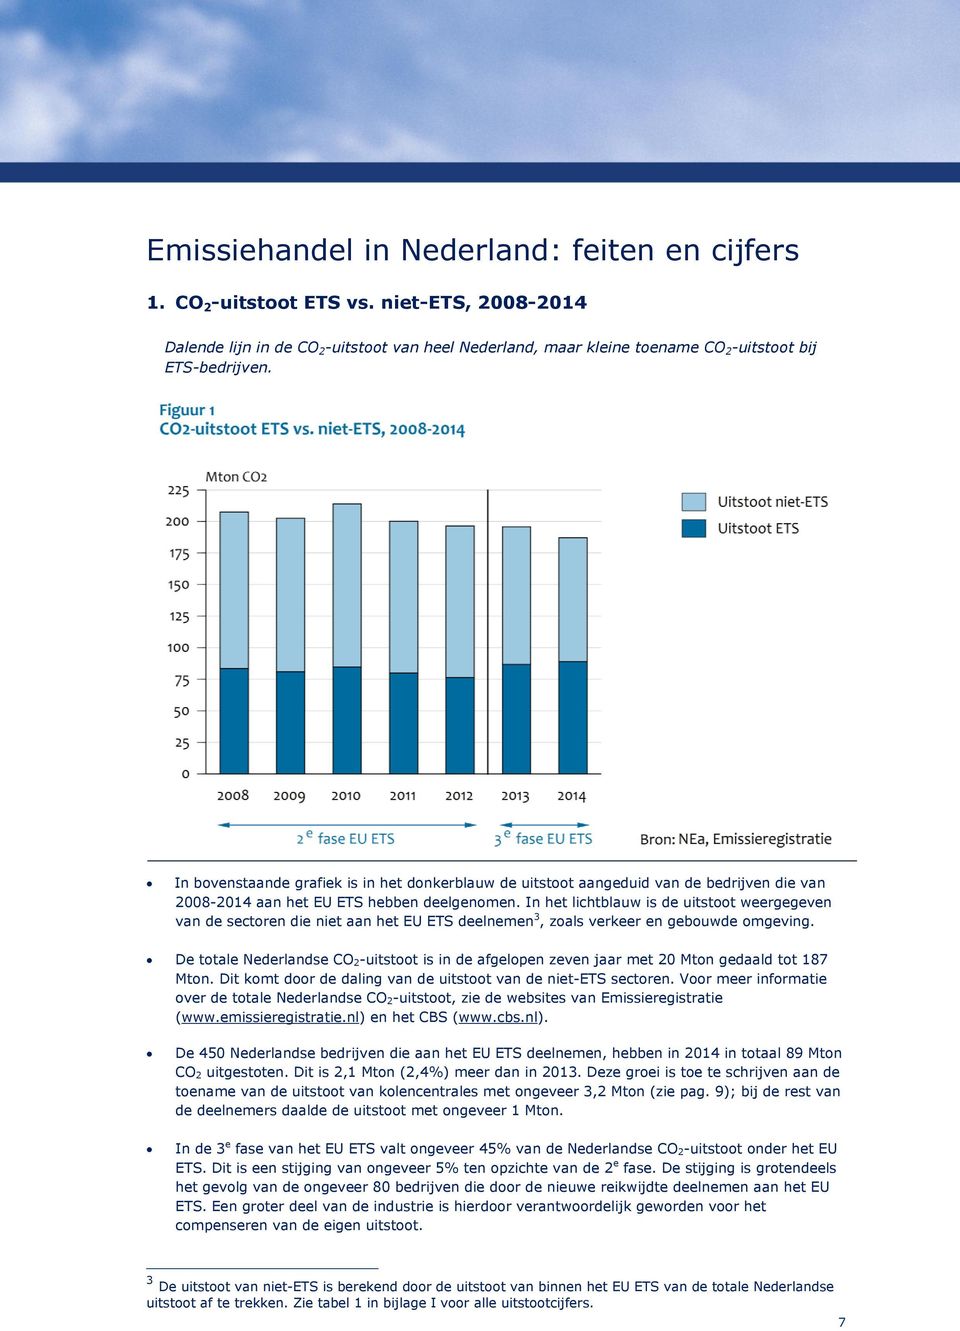 In het lichtblauw is de uitstoot weergegeven van de sectoren die niet aan het EU ETS deelnemen 3, zoals verkeer en gebouwde omgeving.